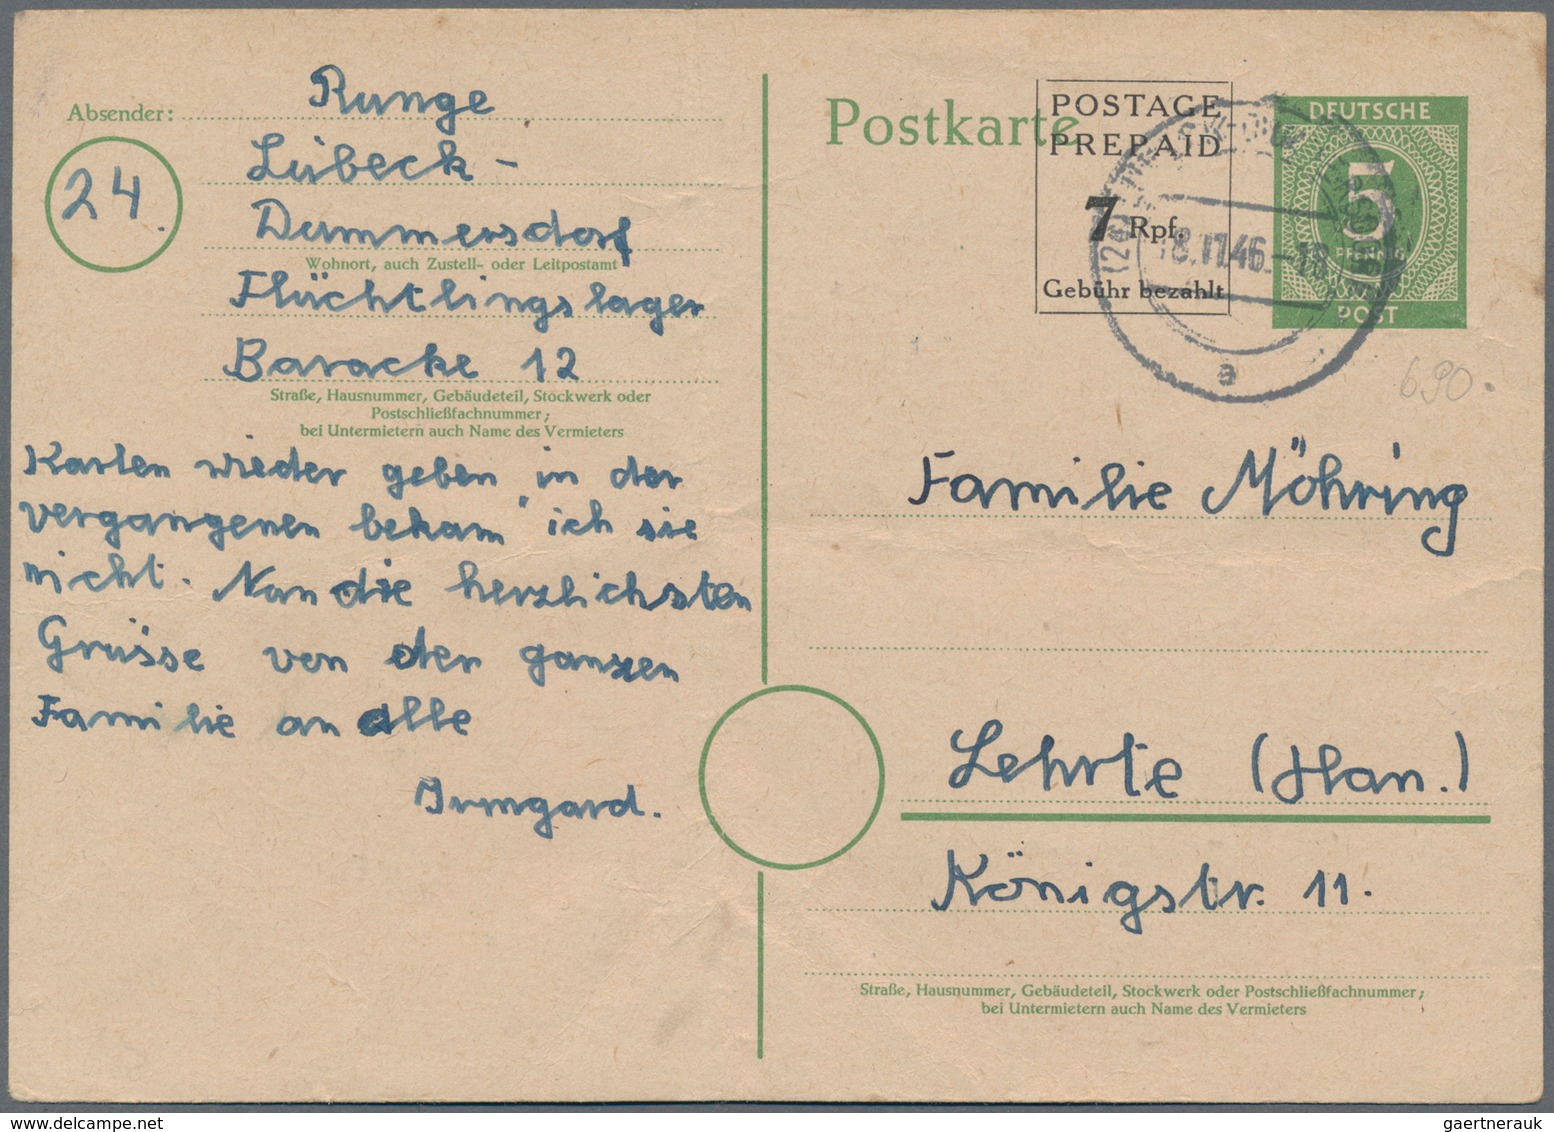 Deutschland - Ganzsachen: 1945 ab, gehaltvolle Sammlung mit ca.260 gebrauchten Ganzsachen im Ringbin